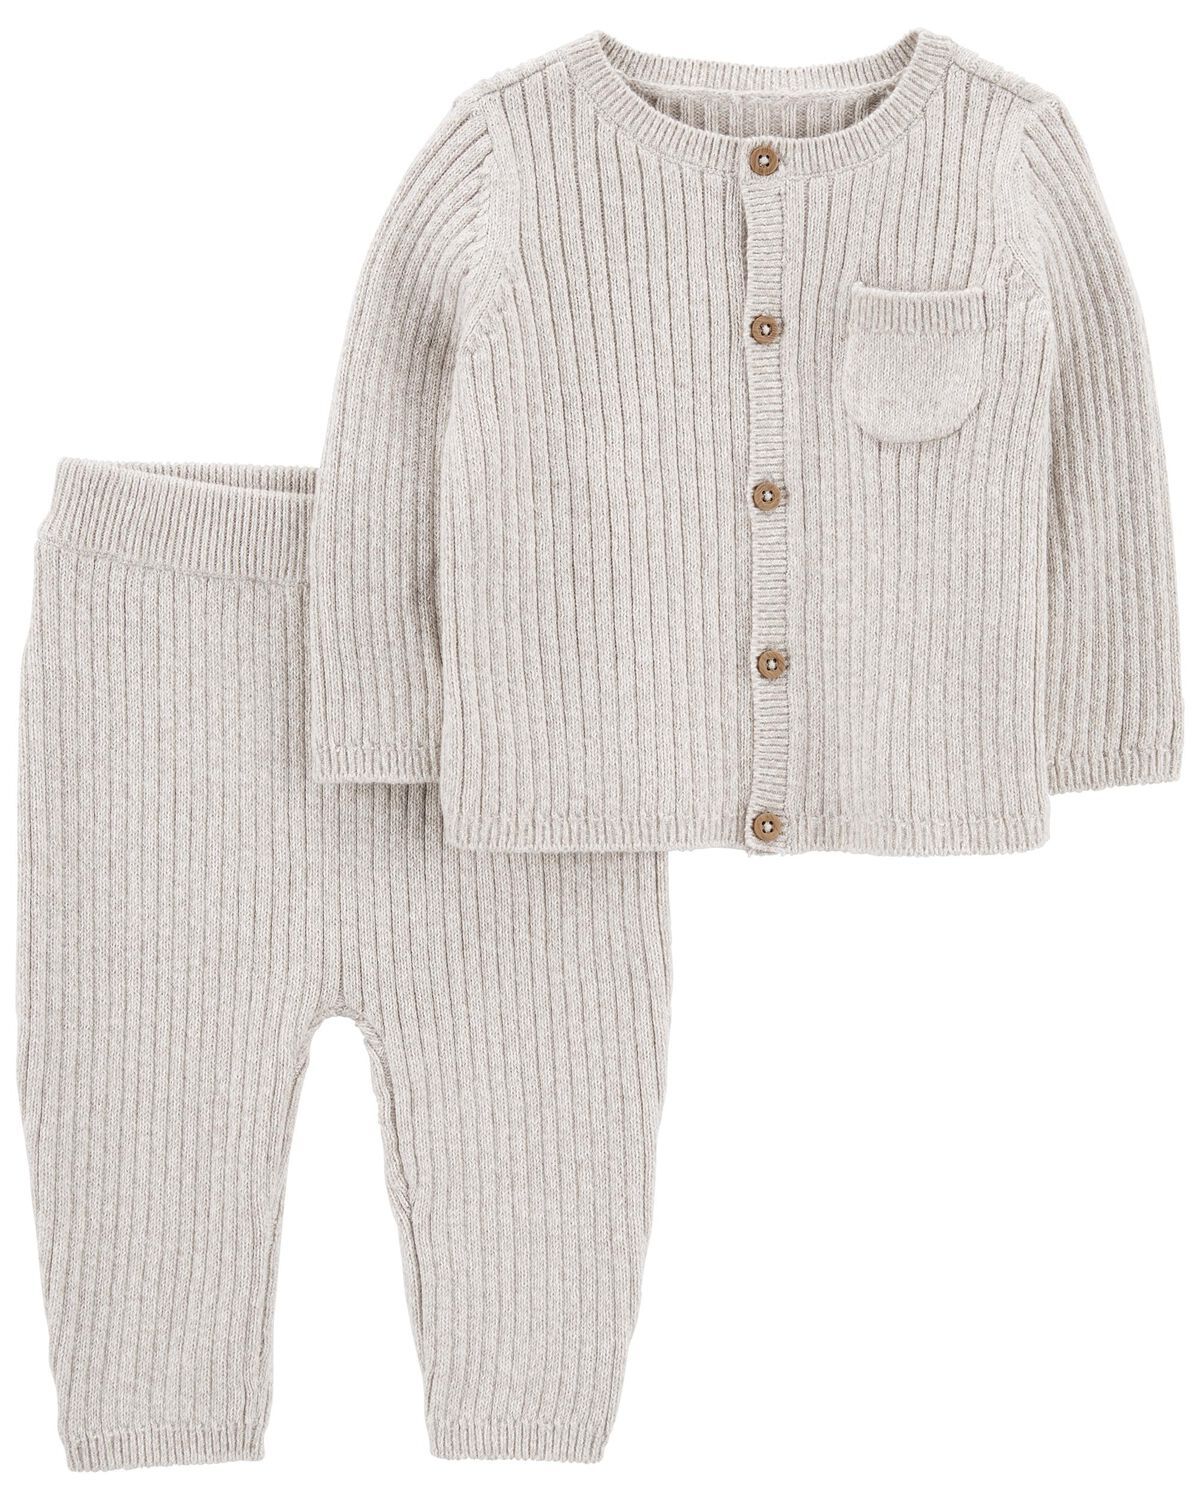 Heather Baby 2-Piece Cardigan Sweater & Pant Set | carters.com | Carter's